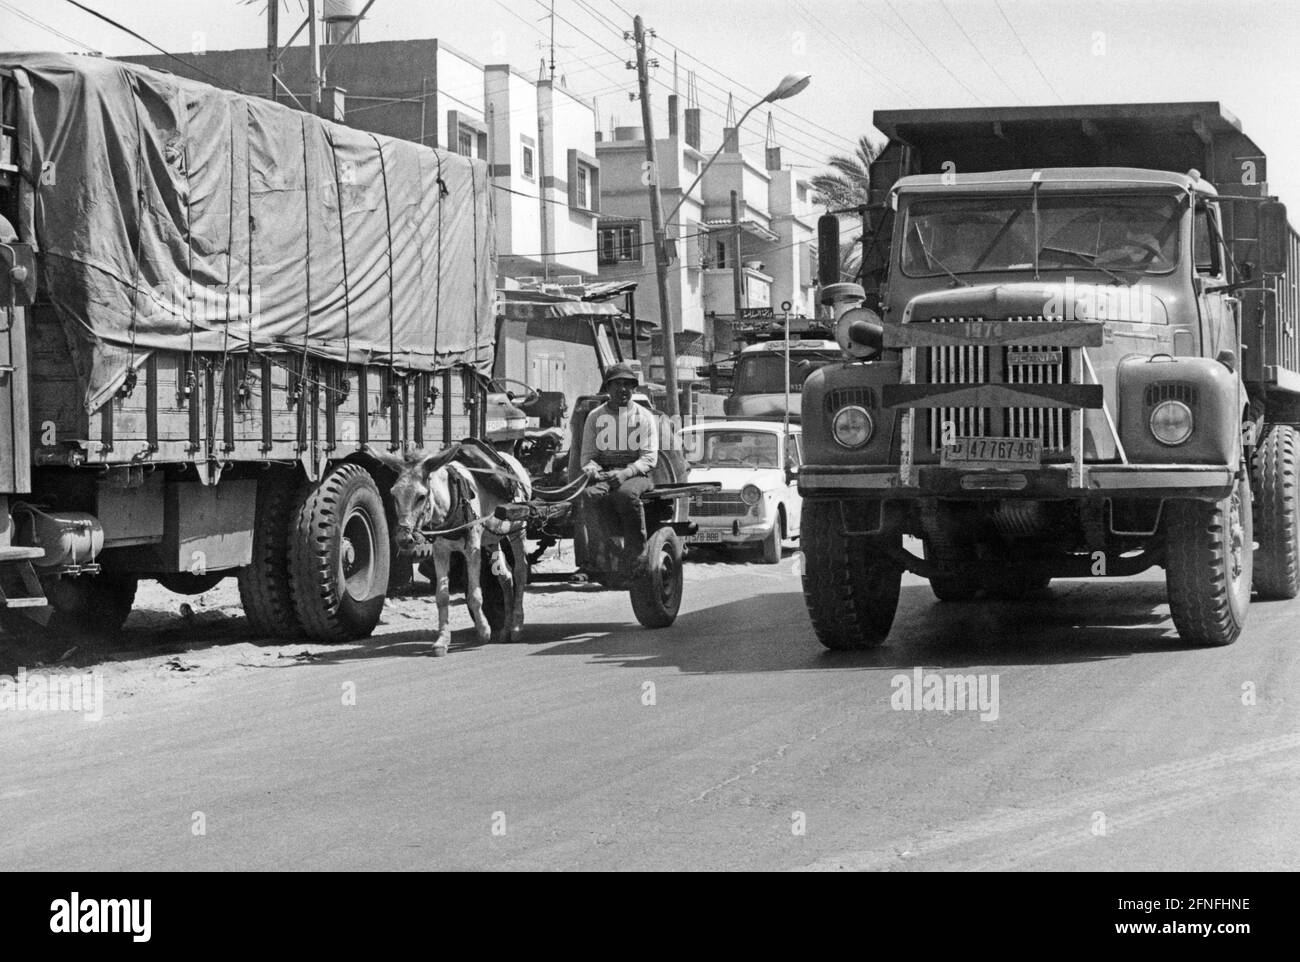 Trafic à Gaza. Entre les voitures et les camions, il y a un chariot à âne traditionnel. [traduction automatique] Banque D'Images